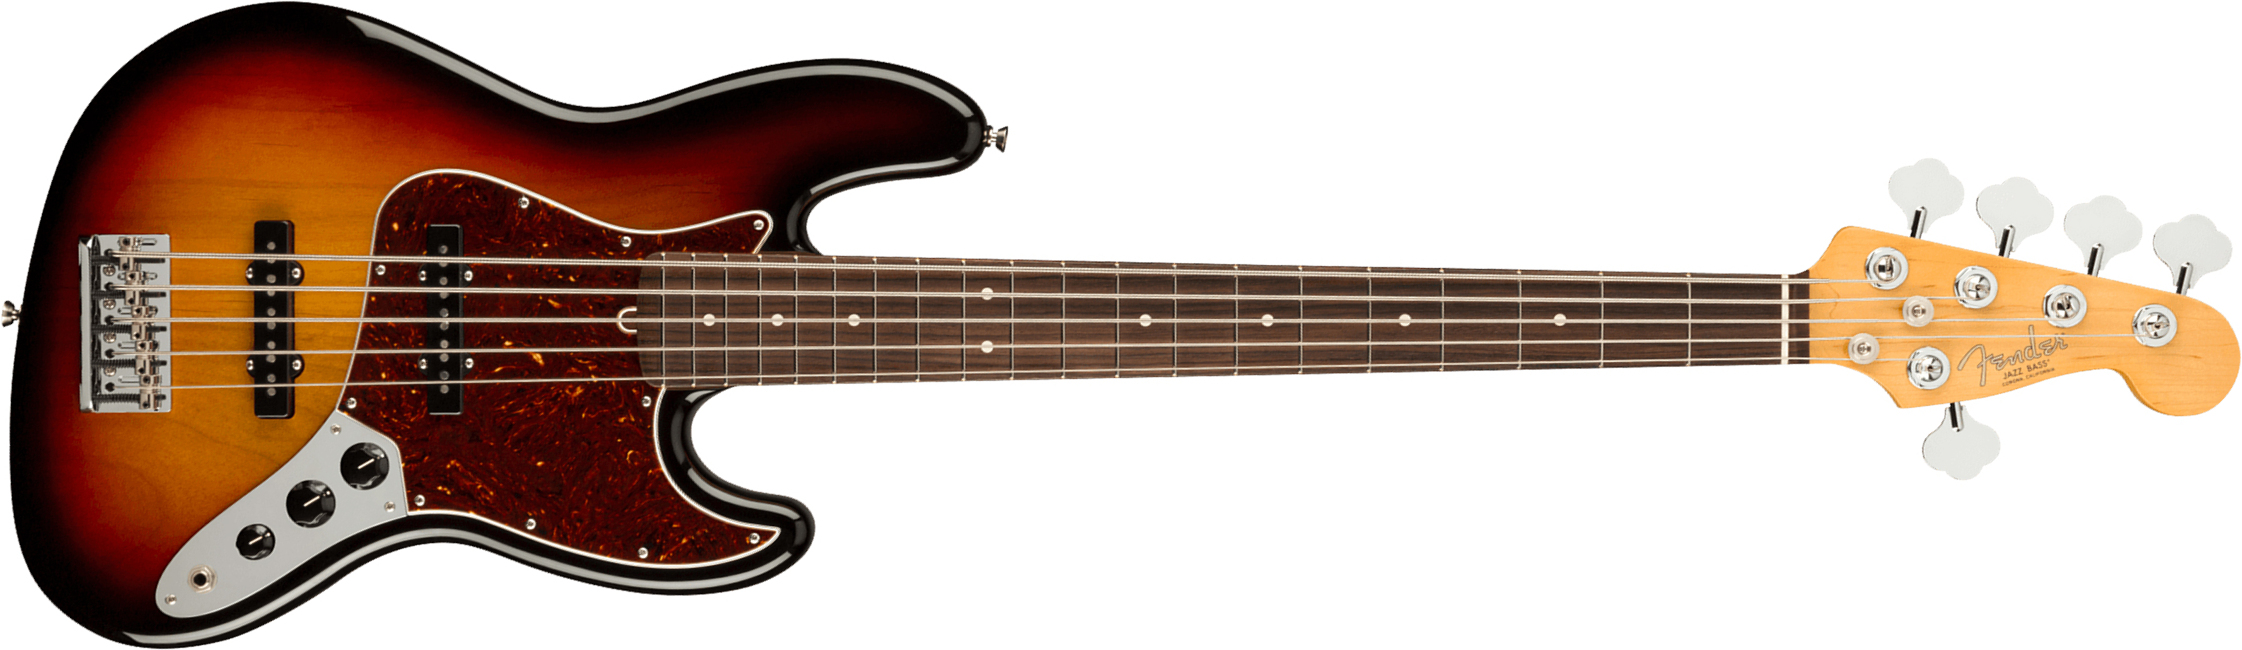 Fender Jazz Bass V American Professional Ii Usa 5-cordes Rw - 3-color Sunburst - Bajo eléctrico de cuerpo sólido - Main picture